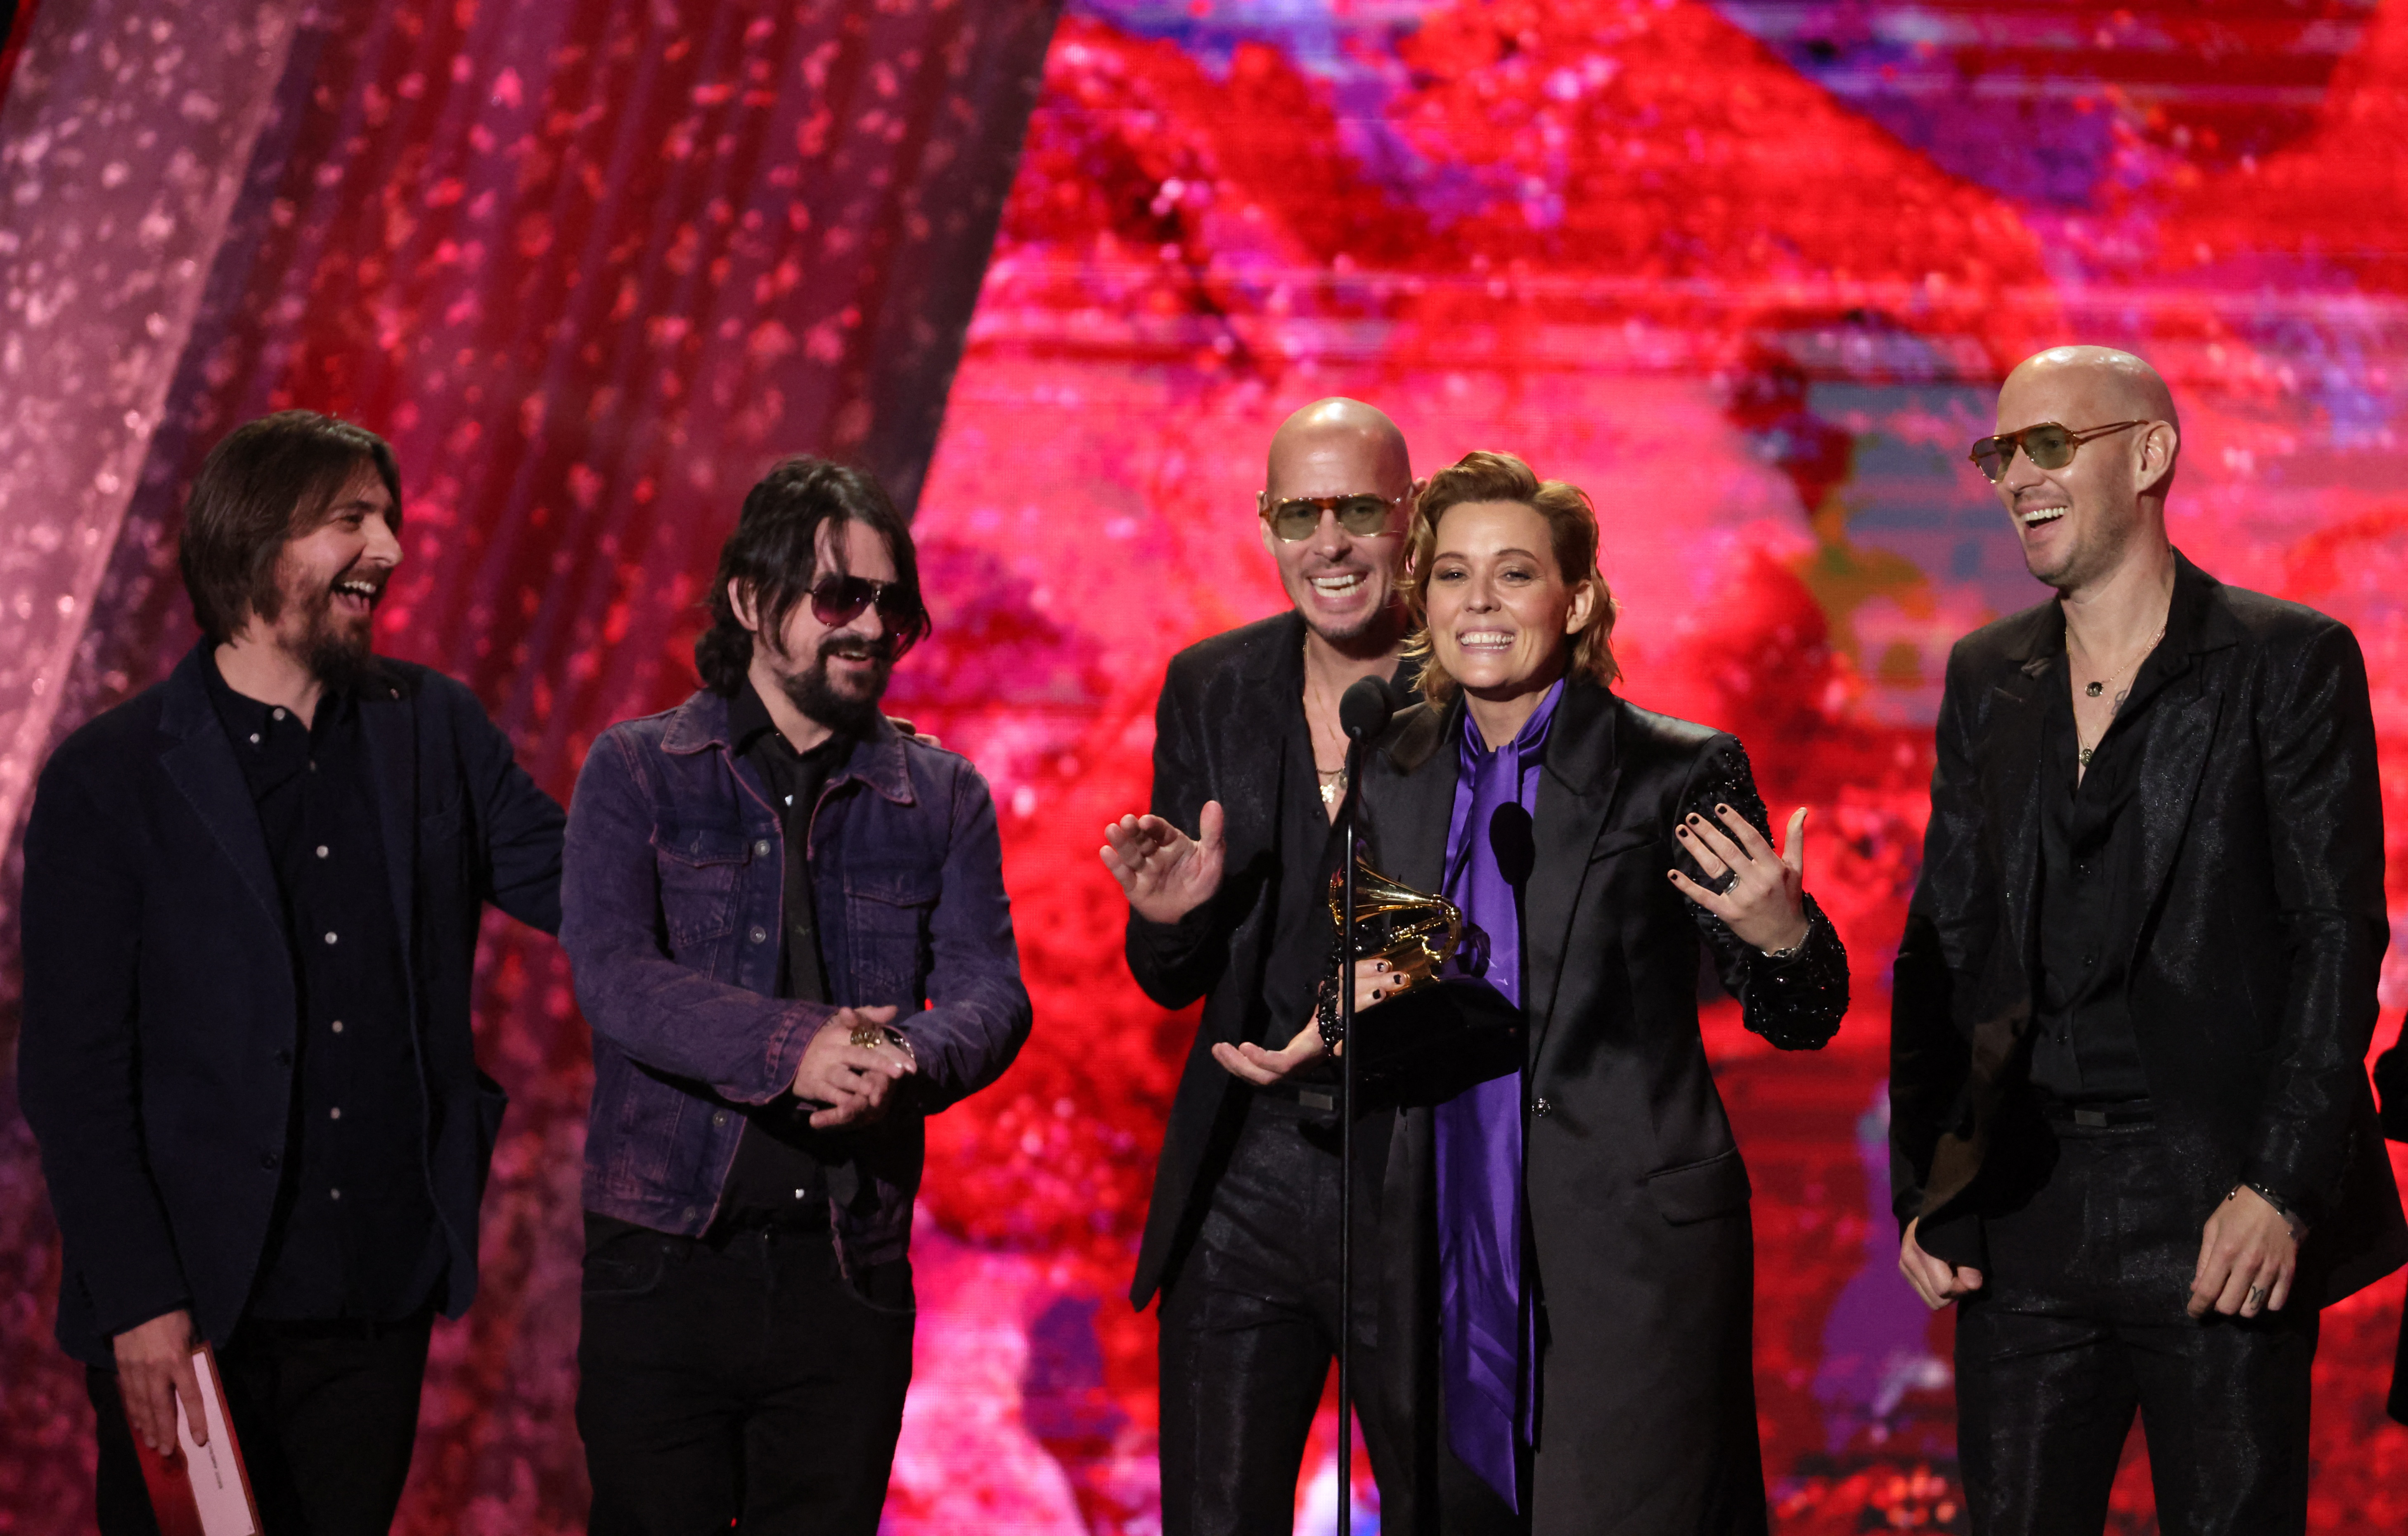 Premios Grammy 2023: Brandi Carlile fue presentada por su esposa e hijos antes de cantar